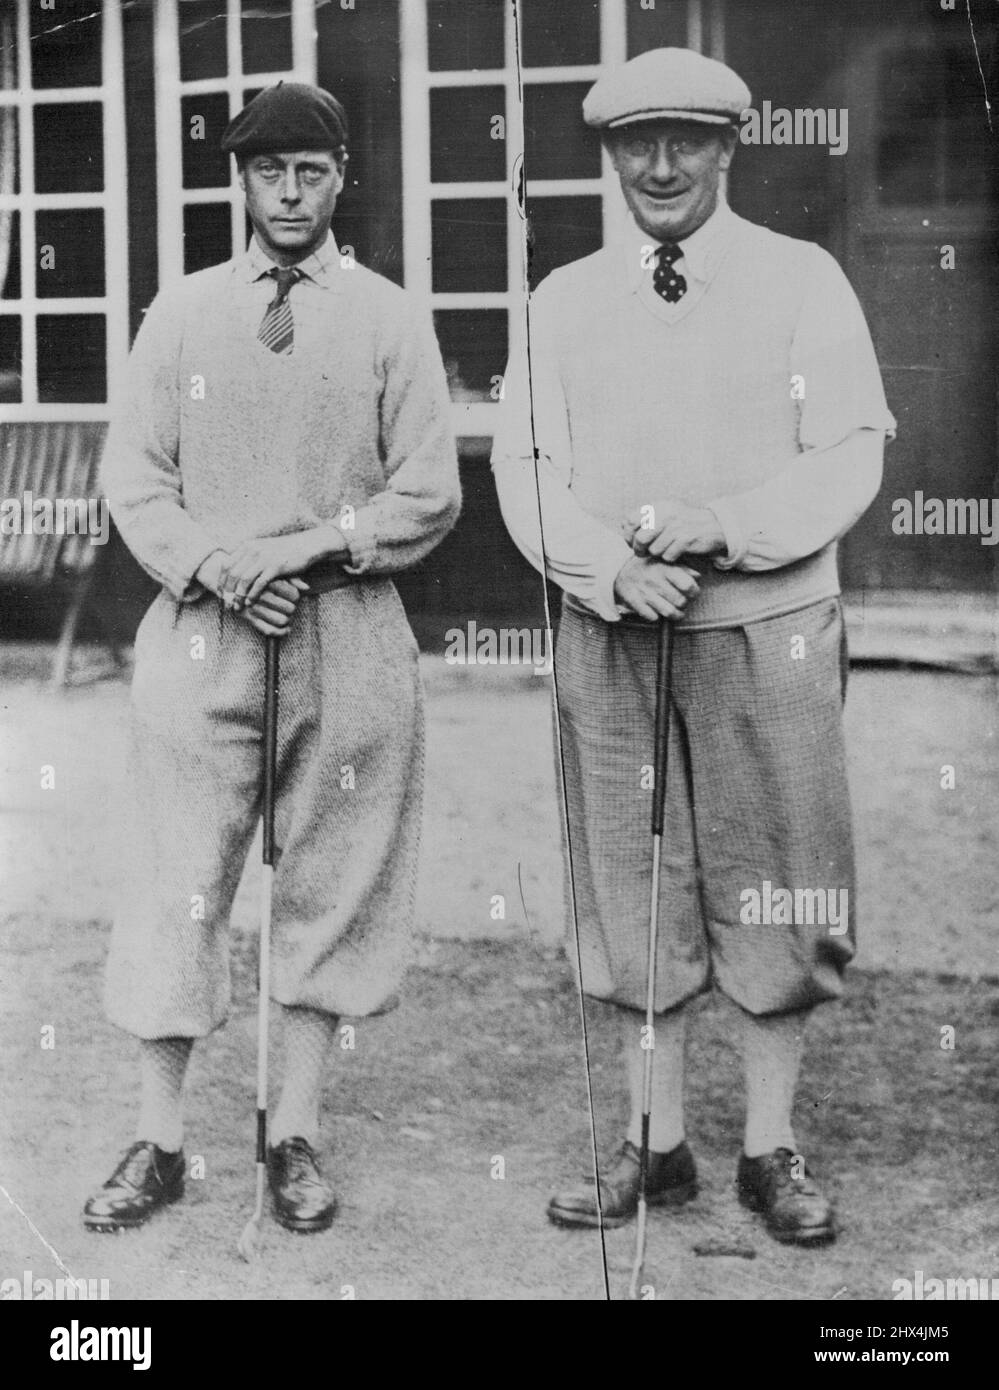 Prince at Golf il Principe di Galles con il golfista svedese, Ancercrona. Il Principe di Galles ha giocato come membro della Danish Golf Team contro la squadra svedese Falsterbo durante il week-end di Copenaghen. Il Principe è stato eletto membro onorario della squadra danese. Gennaio 01, 1932. (Foto della stampante associata). Foto Stock